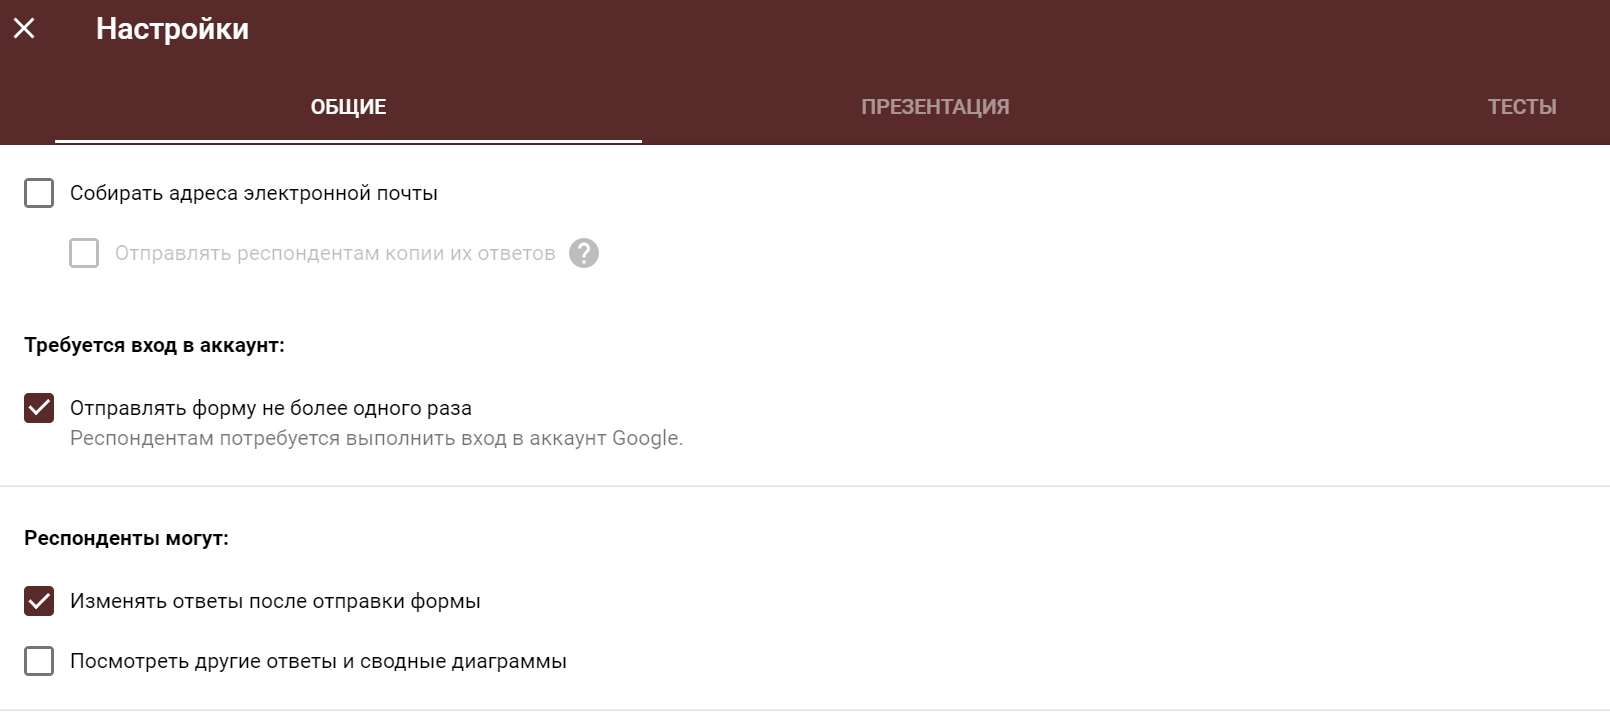 Google Формы: пример оформления. Скриншот с экрана.